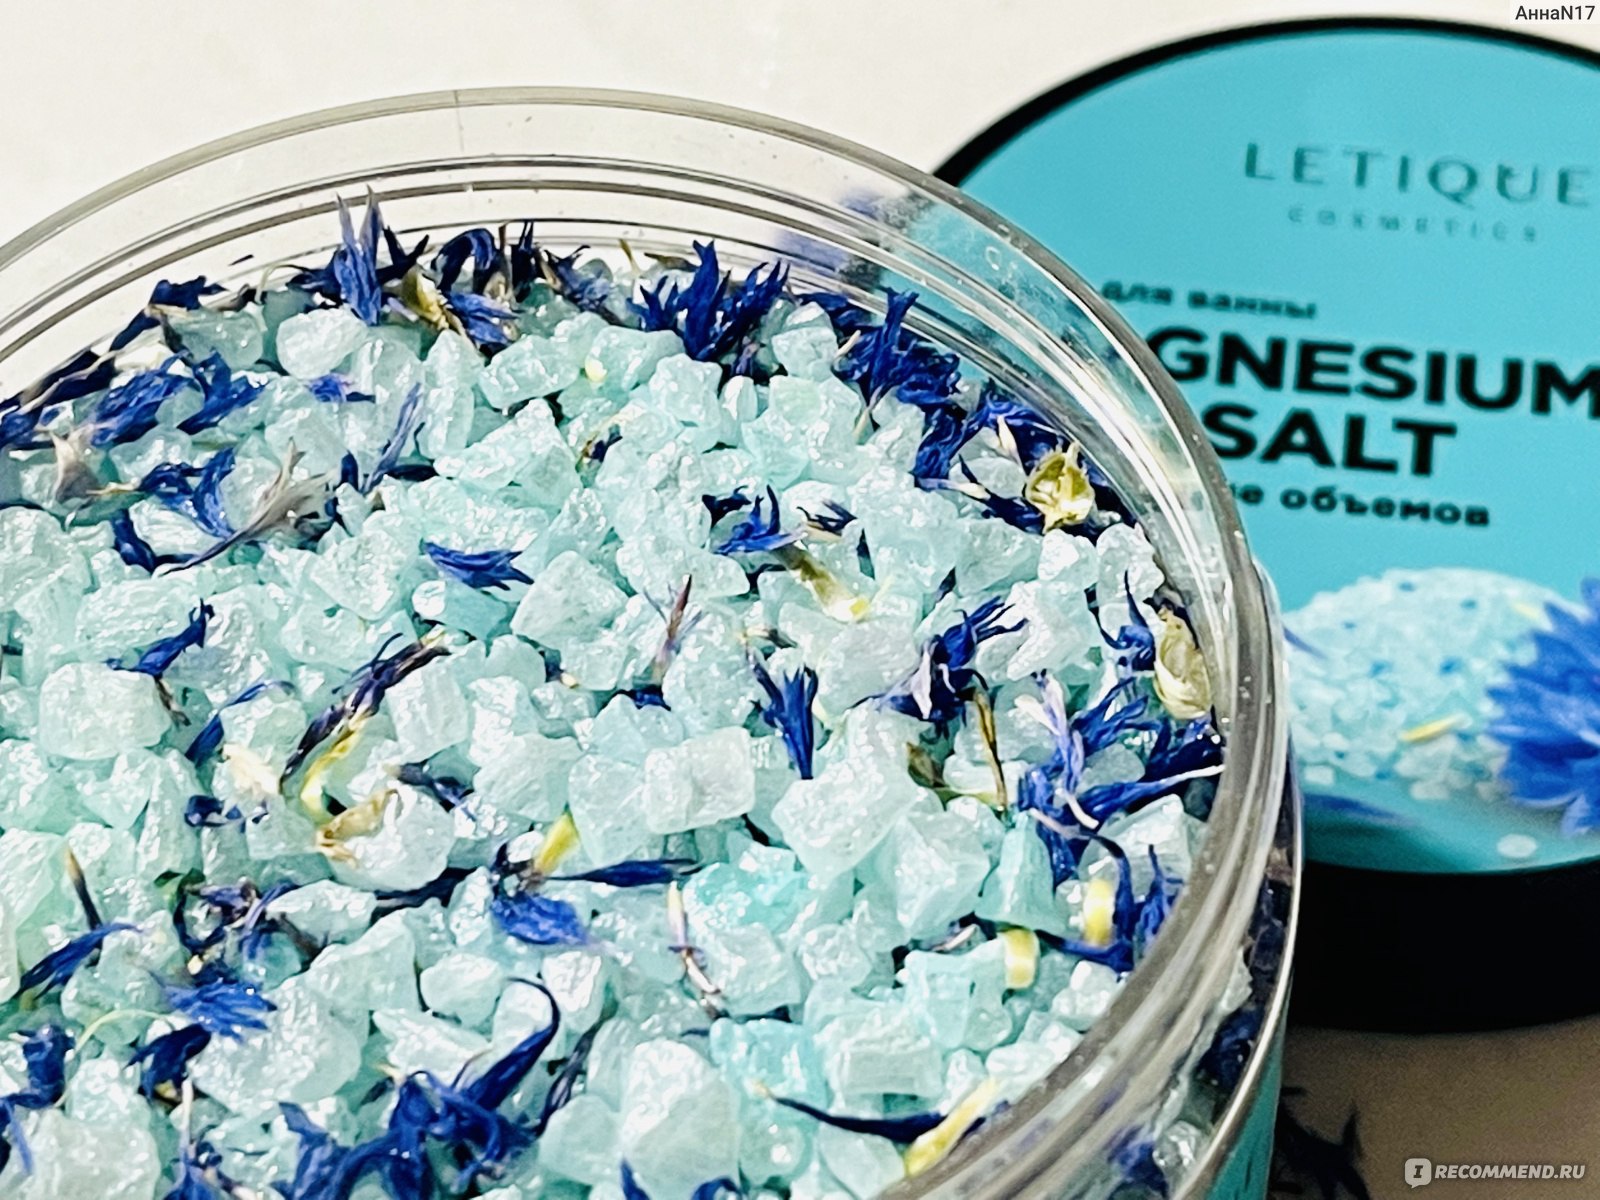 Английская соль для ванны MAGNESIUM SPA SALT от Letique 